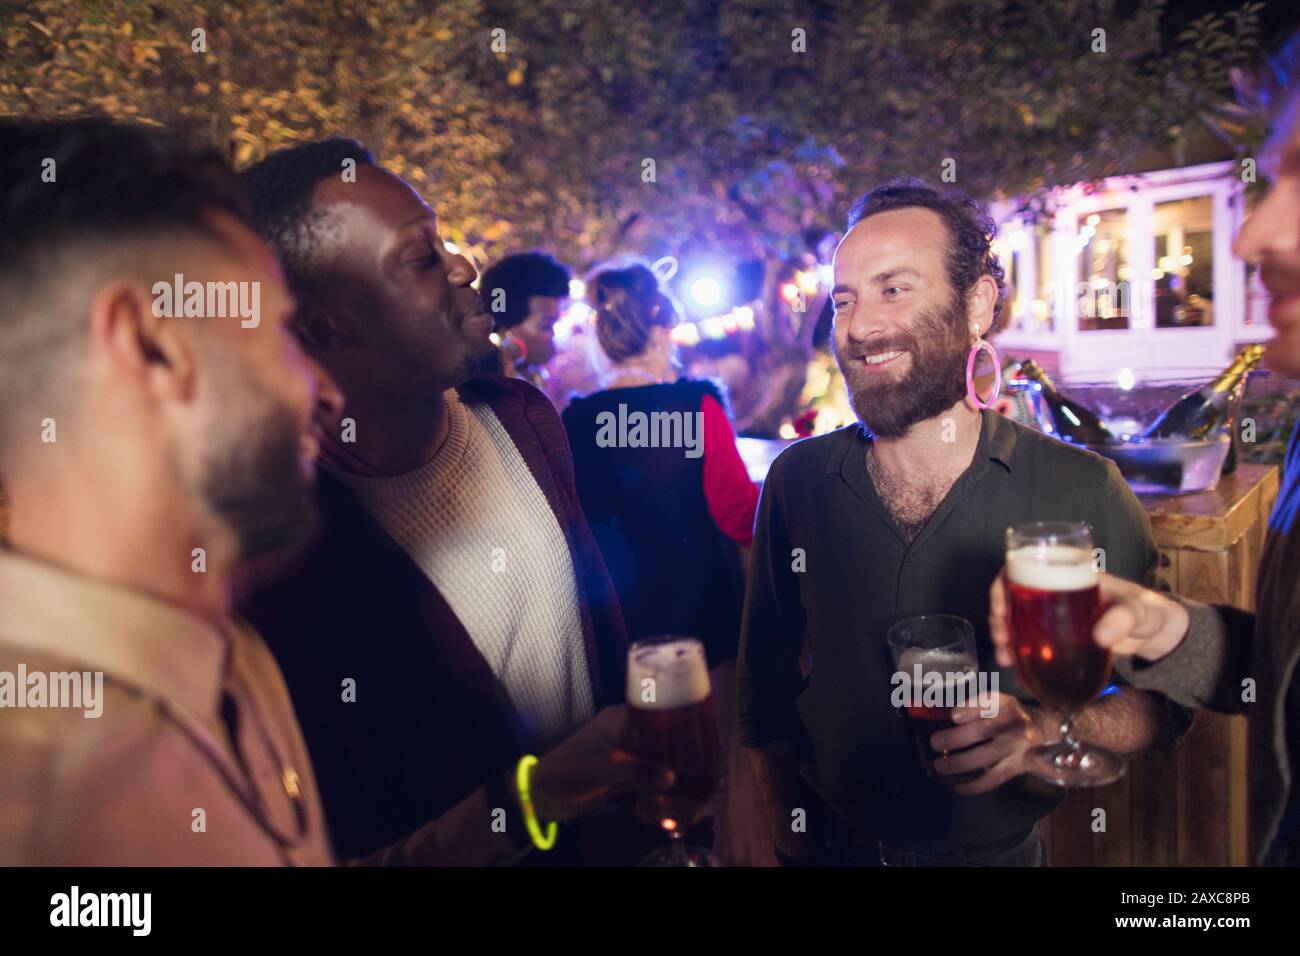 Amici maschi felici che bevono birra alla festa in giardino Foto Stock